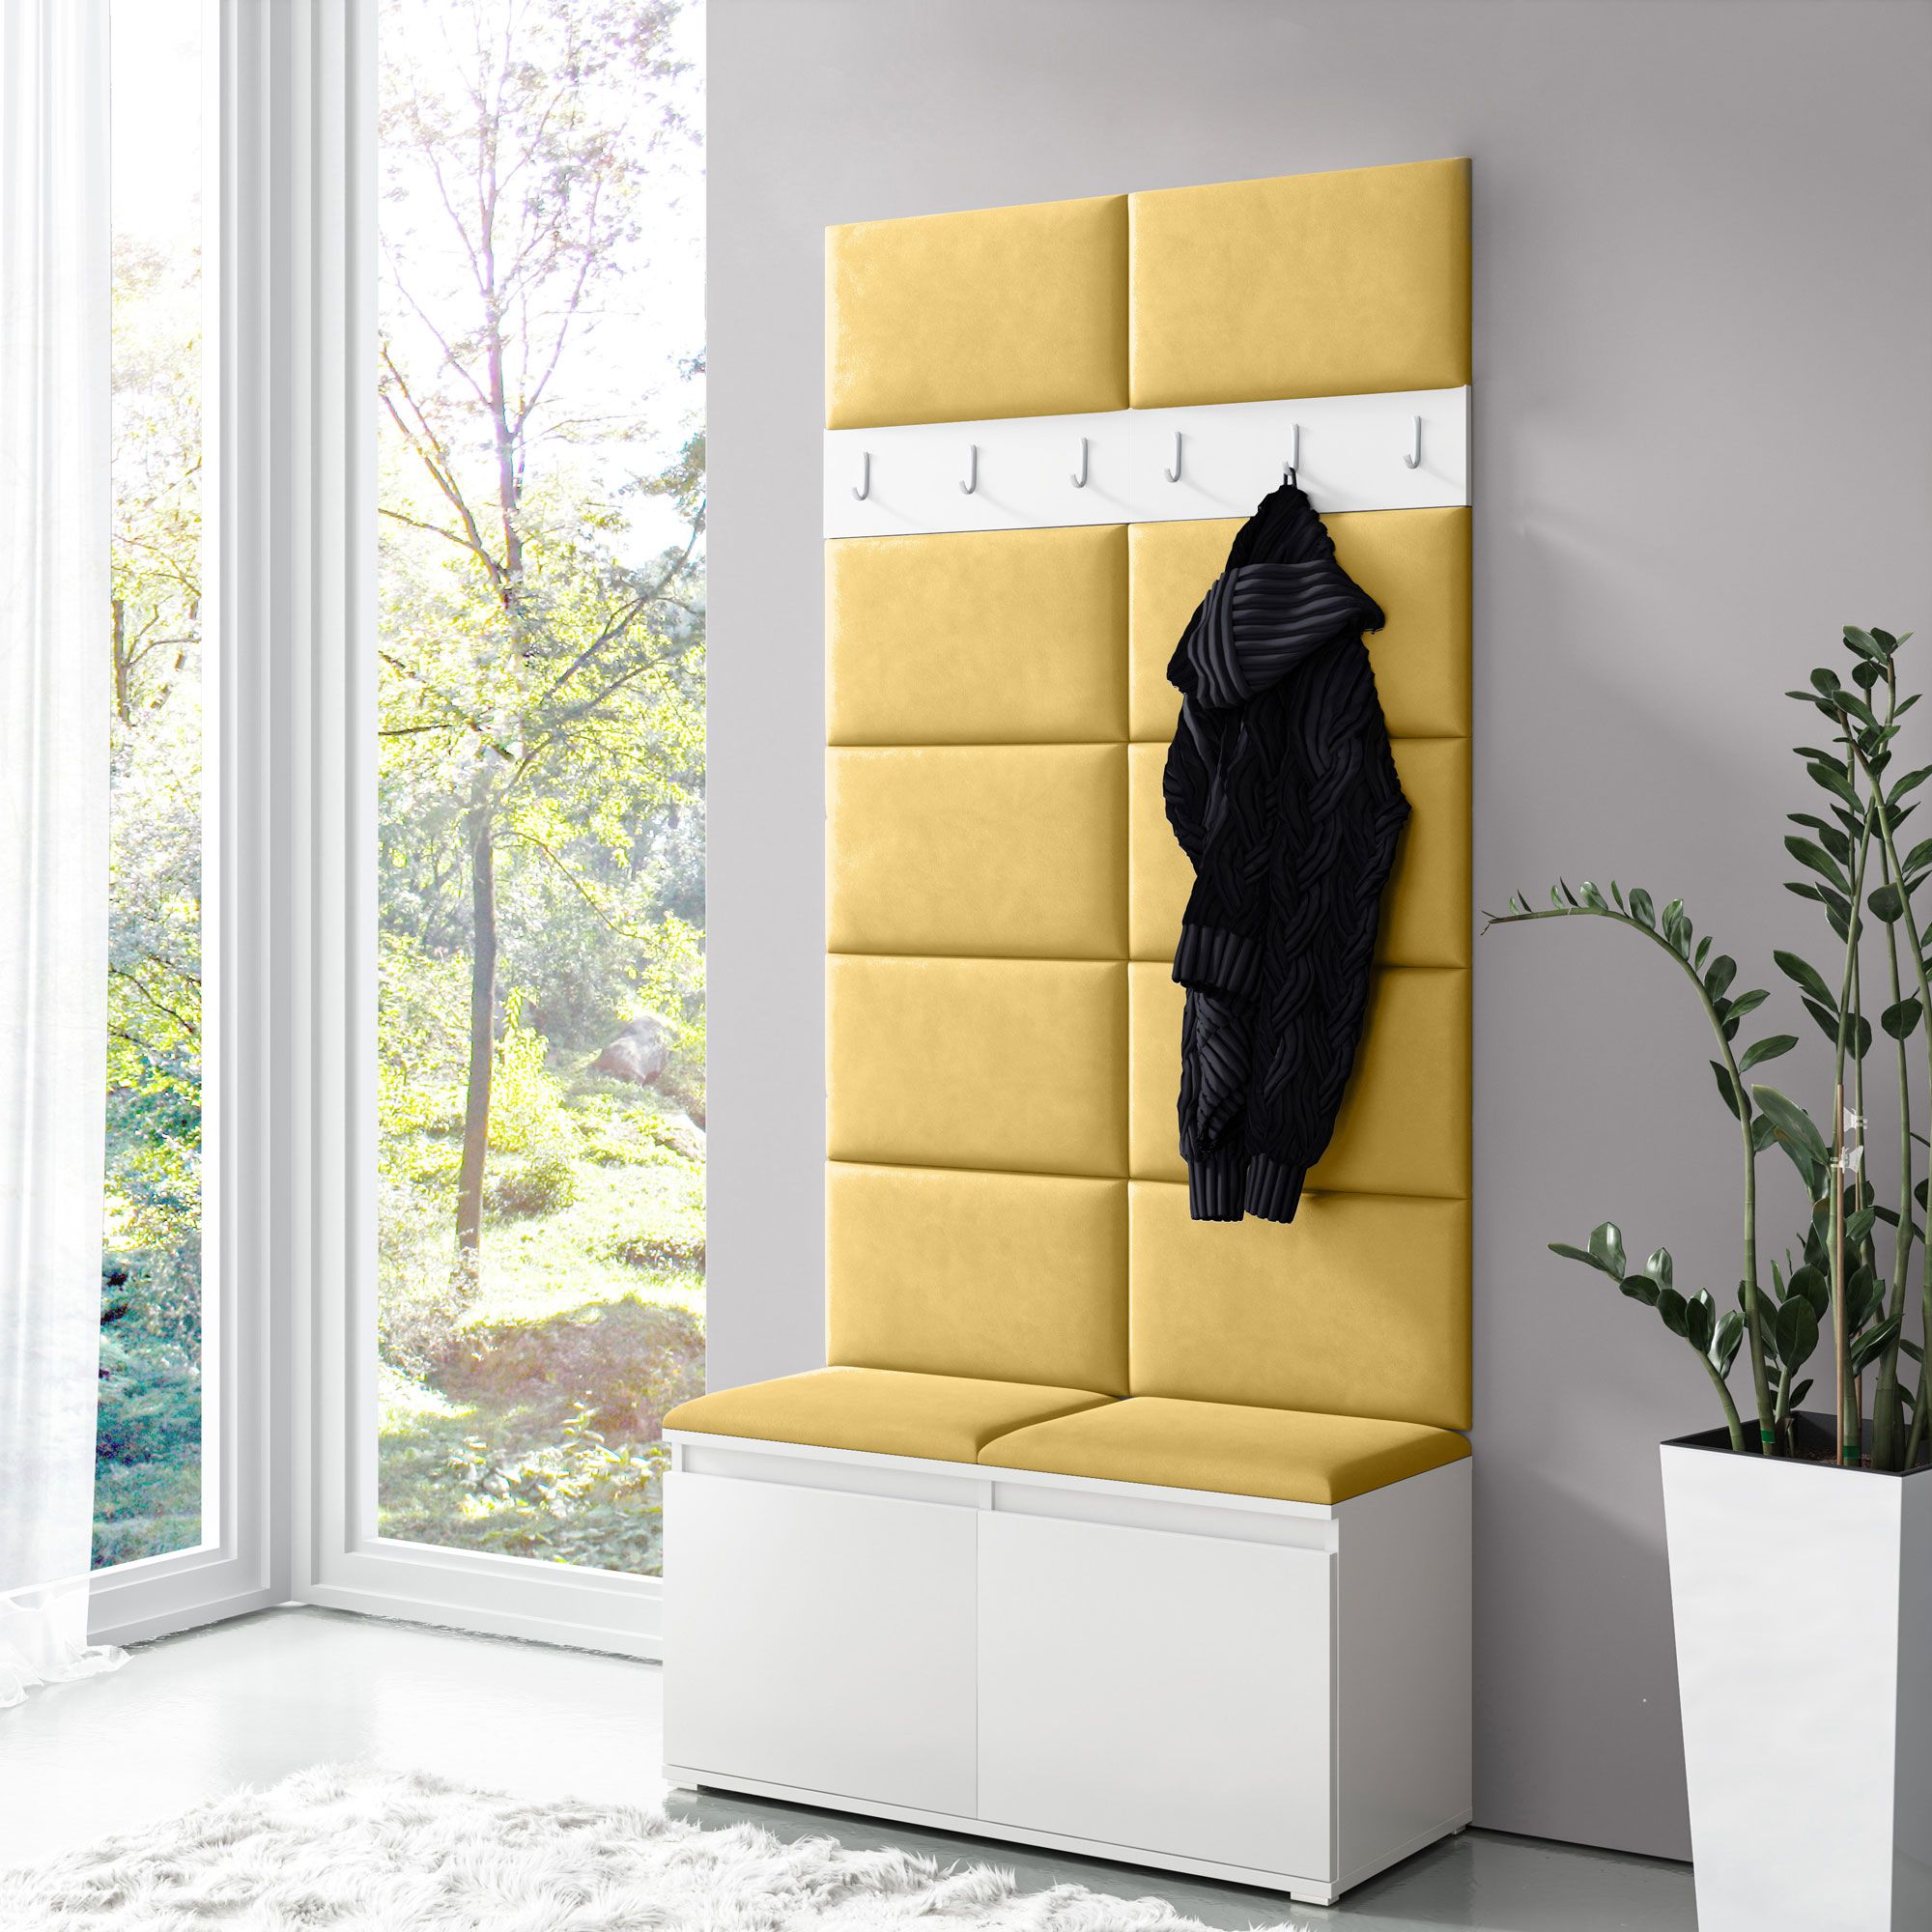 Garderobe 01 mit Gelben Polsterpaneele für Sitzbank und Wand, Weiß/Naples Yellow, 215 x 100 x 40 cm, für 8 Paar Schuhe, 6 Kleiderhaken, 4 Fächer